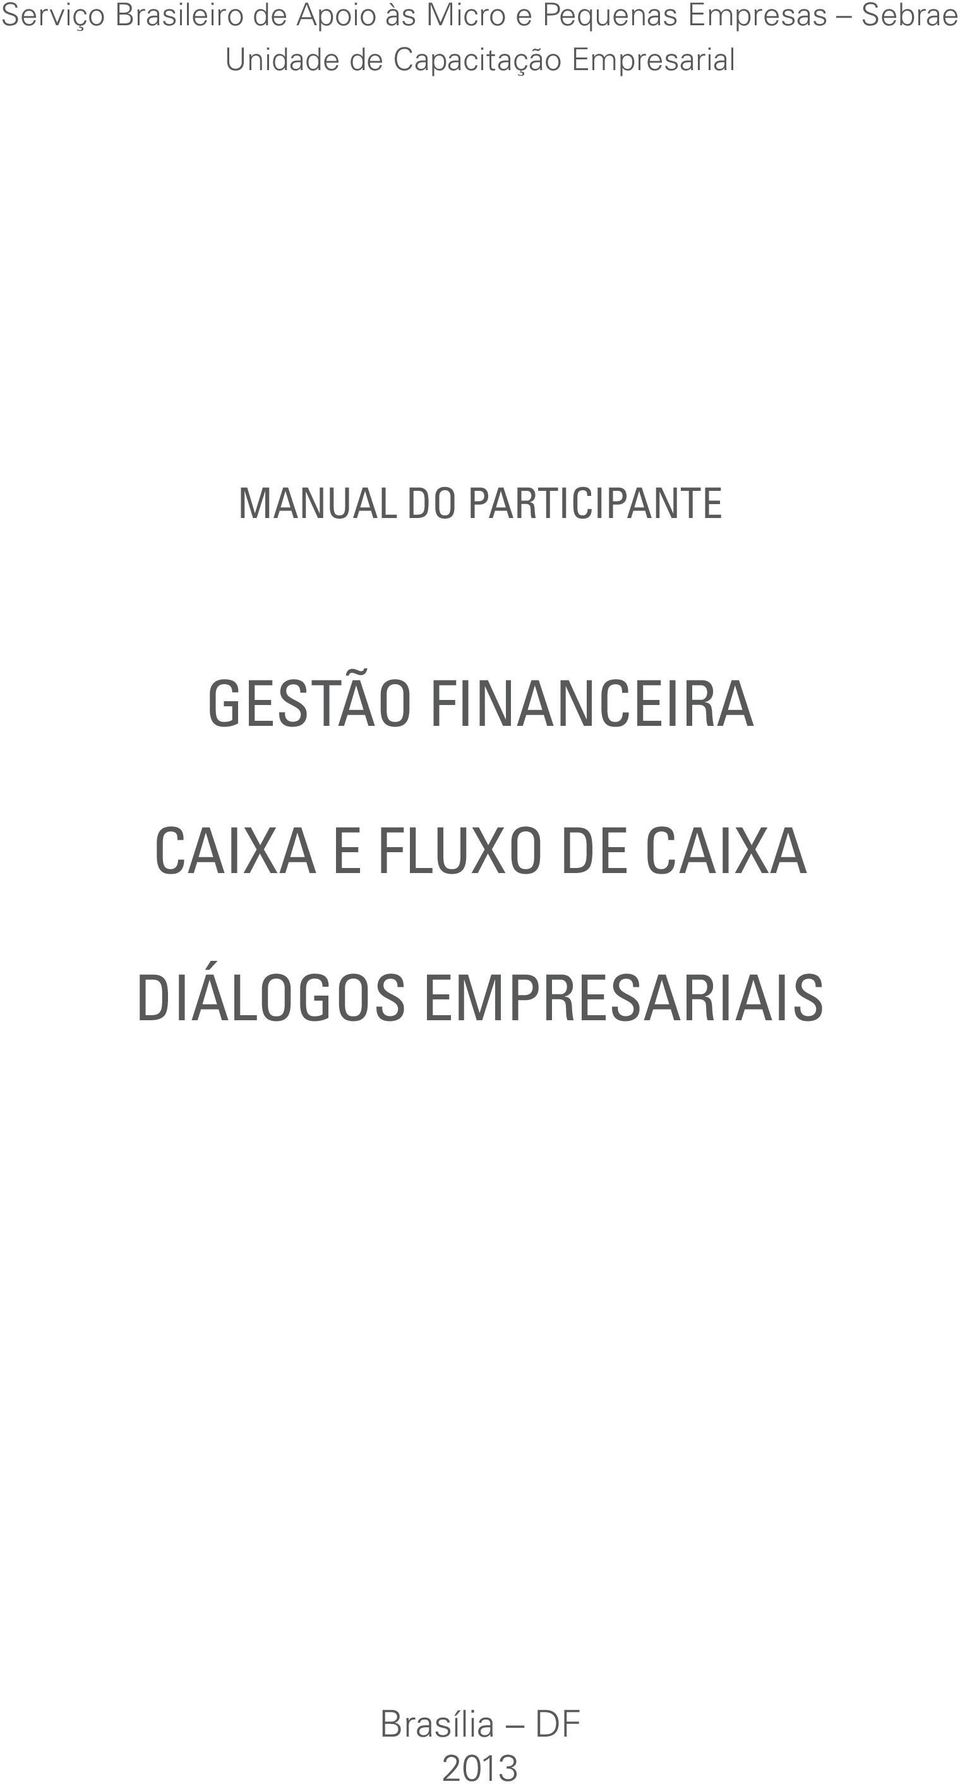 MANUAL DO PARTICIPANTE GESTÃO FINANCEIRA Caixa e